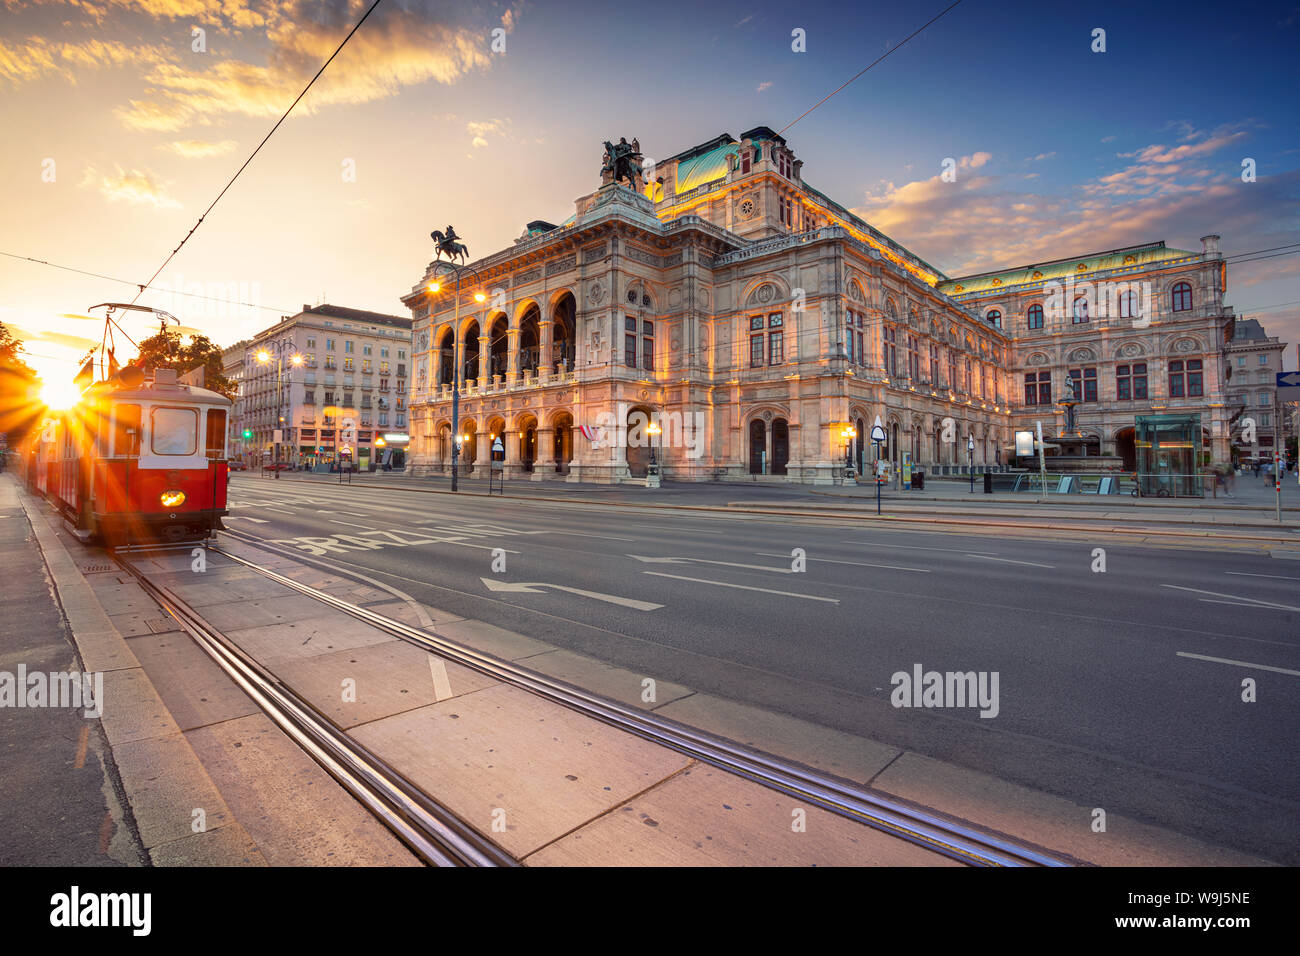 Vienna, Austria. Immagine di panorama urbano di Vienna con l'Opera di Stato di Vienna durante il tramonto. Foto Stock